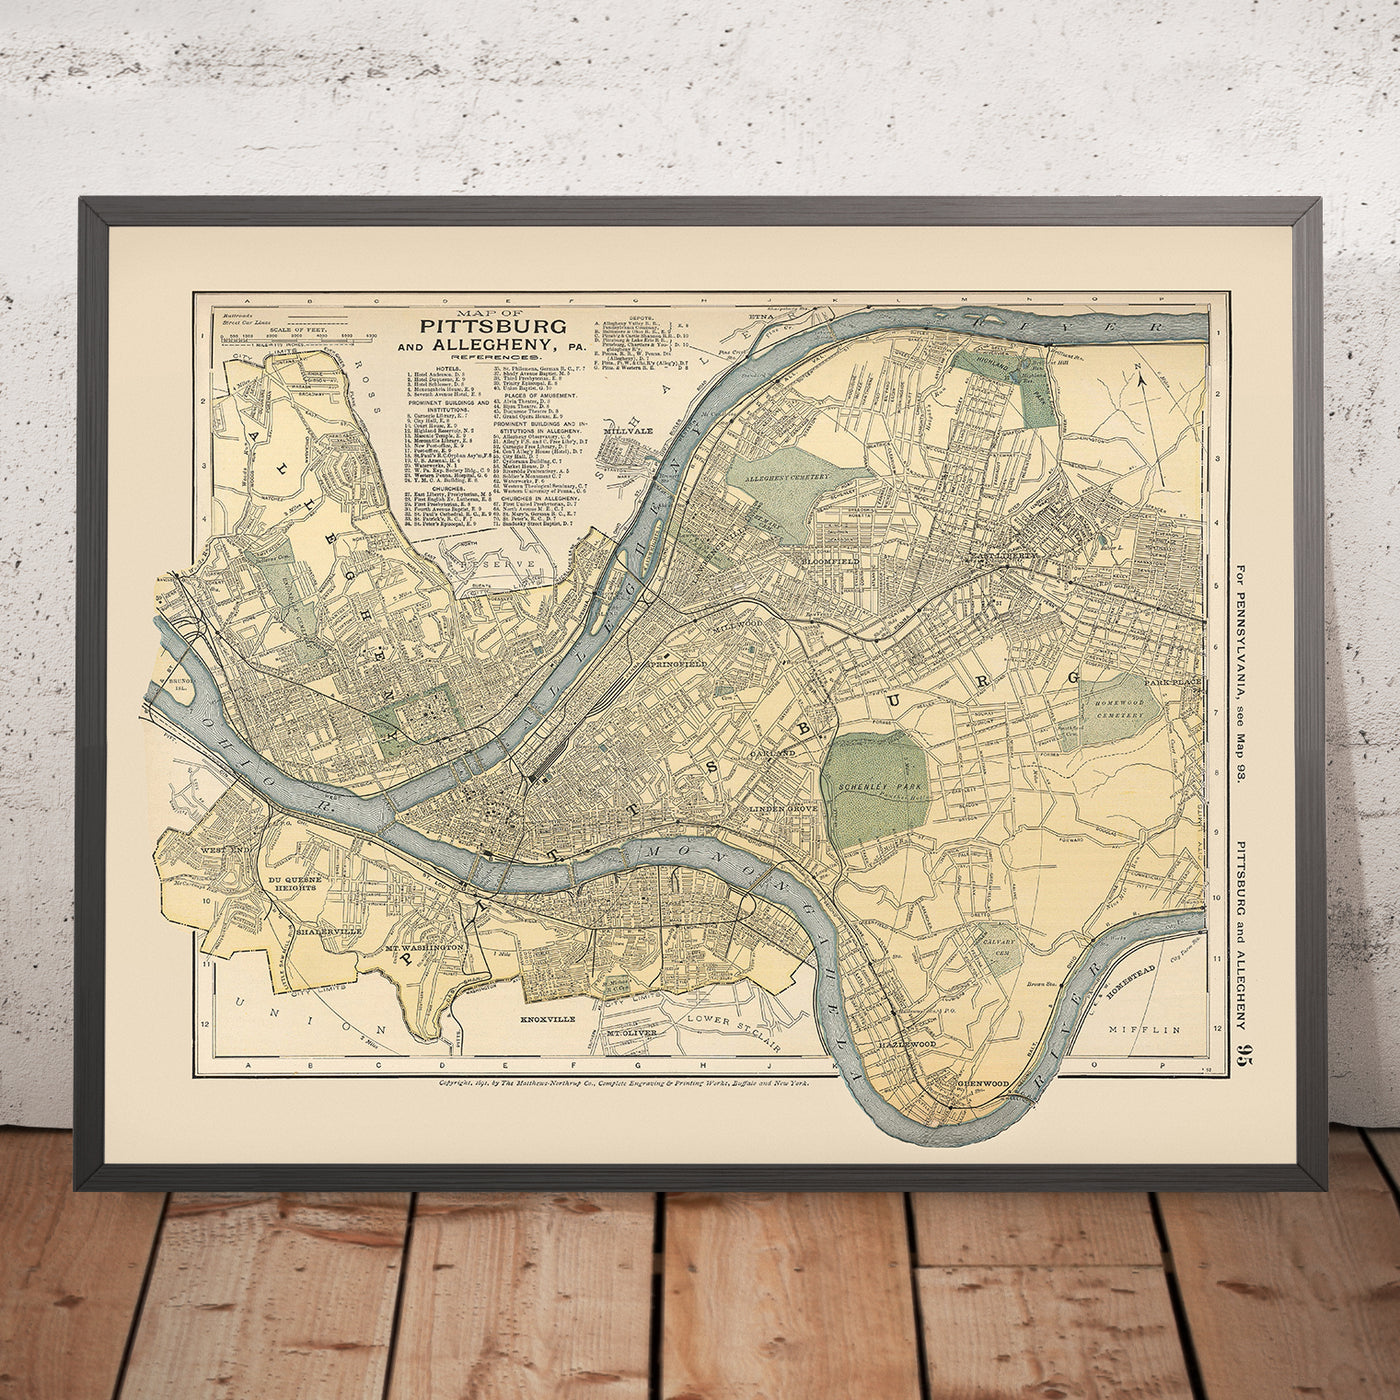 Alte Karte von Pittsburgh, 1891: Allegheny, East Liberty, Highland Park, Schenley Park, Monongahela River